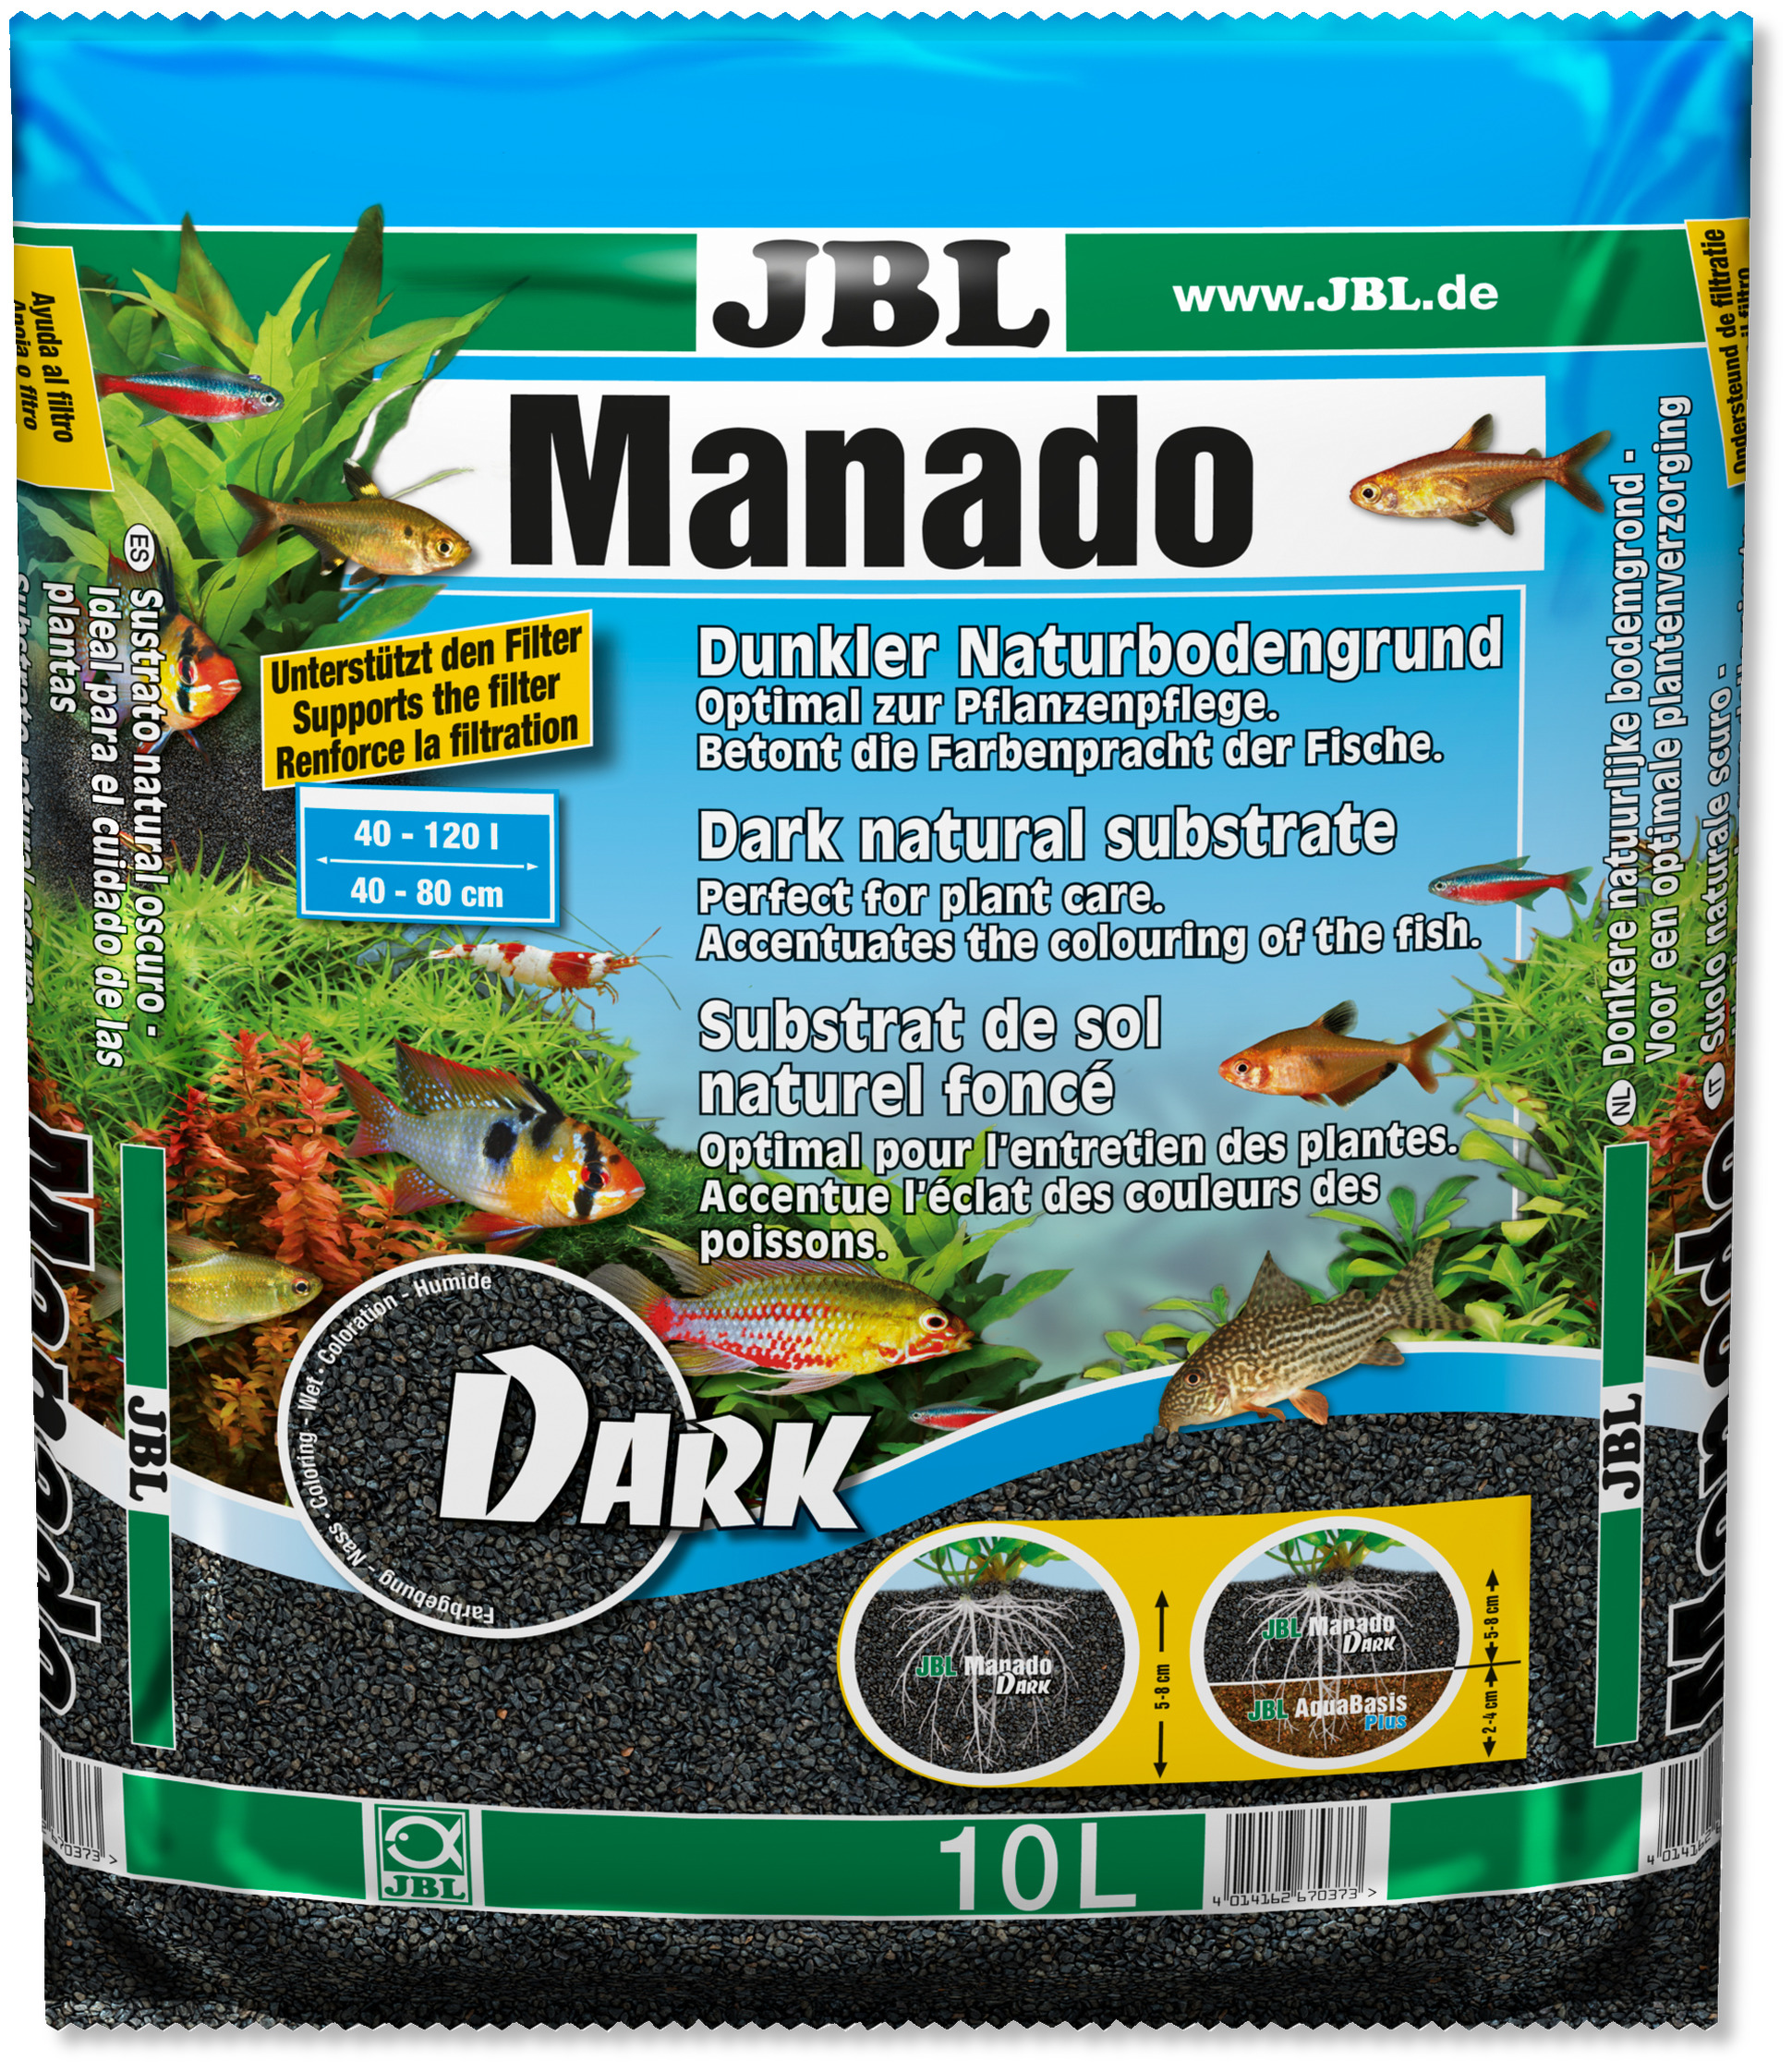 jbl-manado-dark-10l-substrat-noir-tout-en-un-pour-decoration-et-fertilisation-en-aquarium